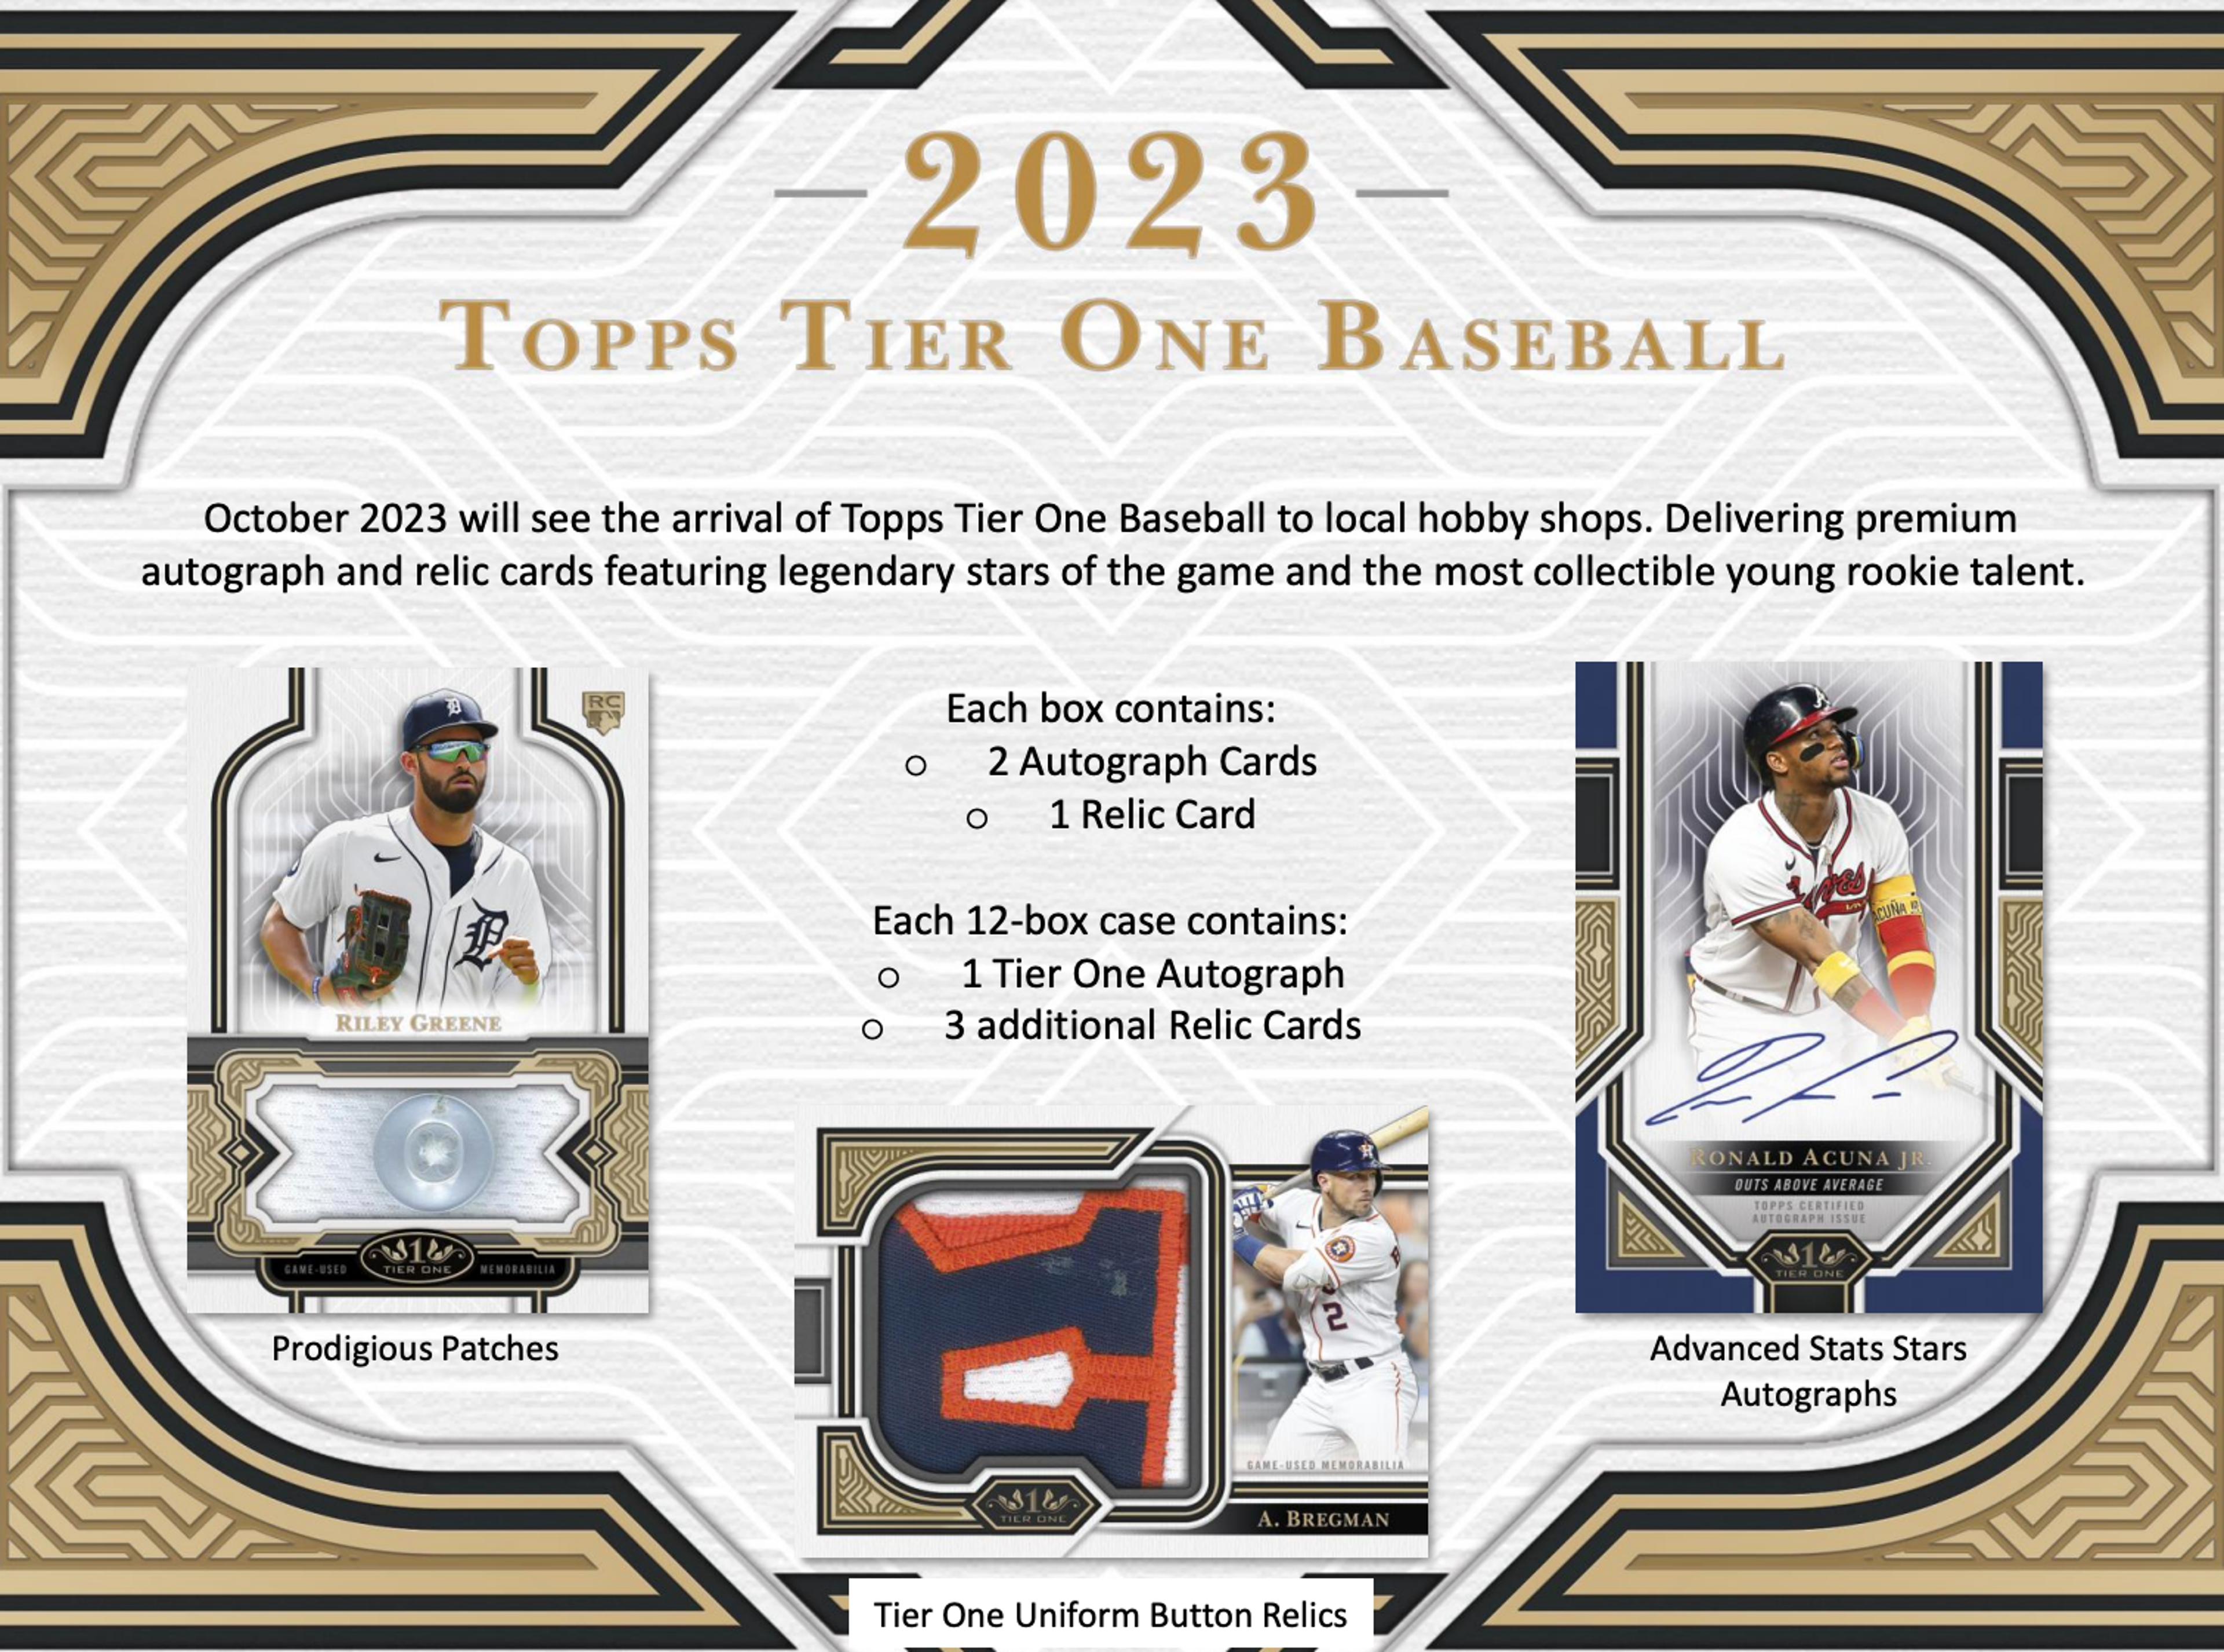 Alternate View 1 of 2023 Topps Tier One Baseball Hobby Box